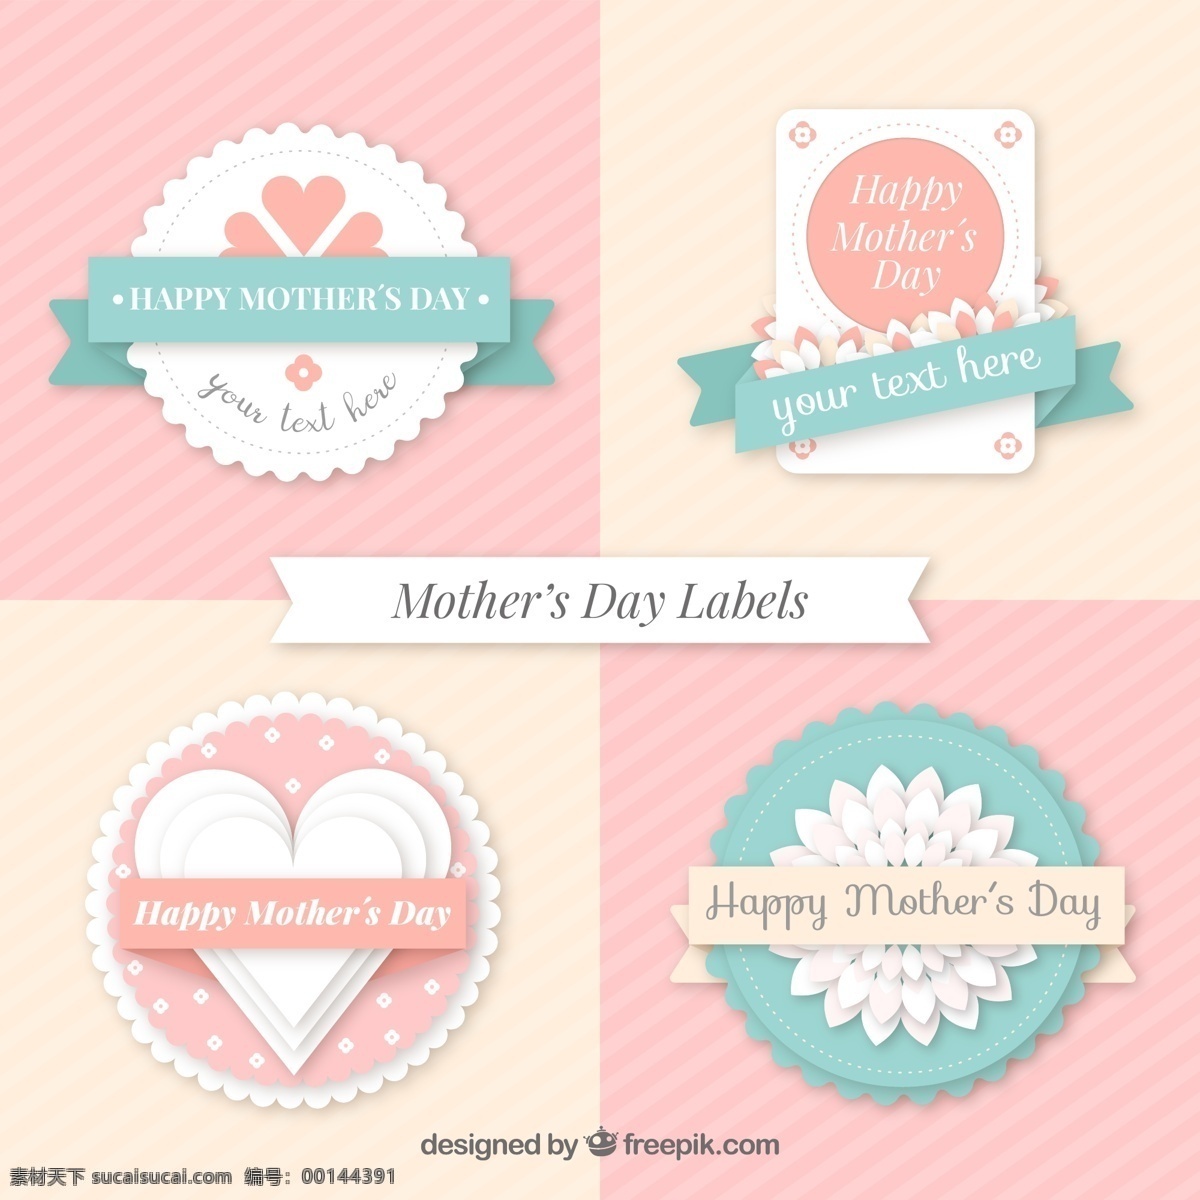 款 清新 质感 母亲节 标签 矢量 卡片封面 粉红色 蓝色 矢量素材 爱心 水彩 金盏菊